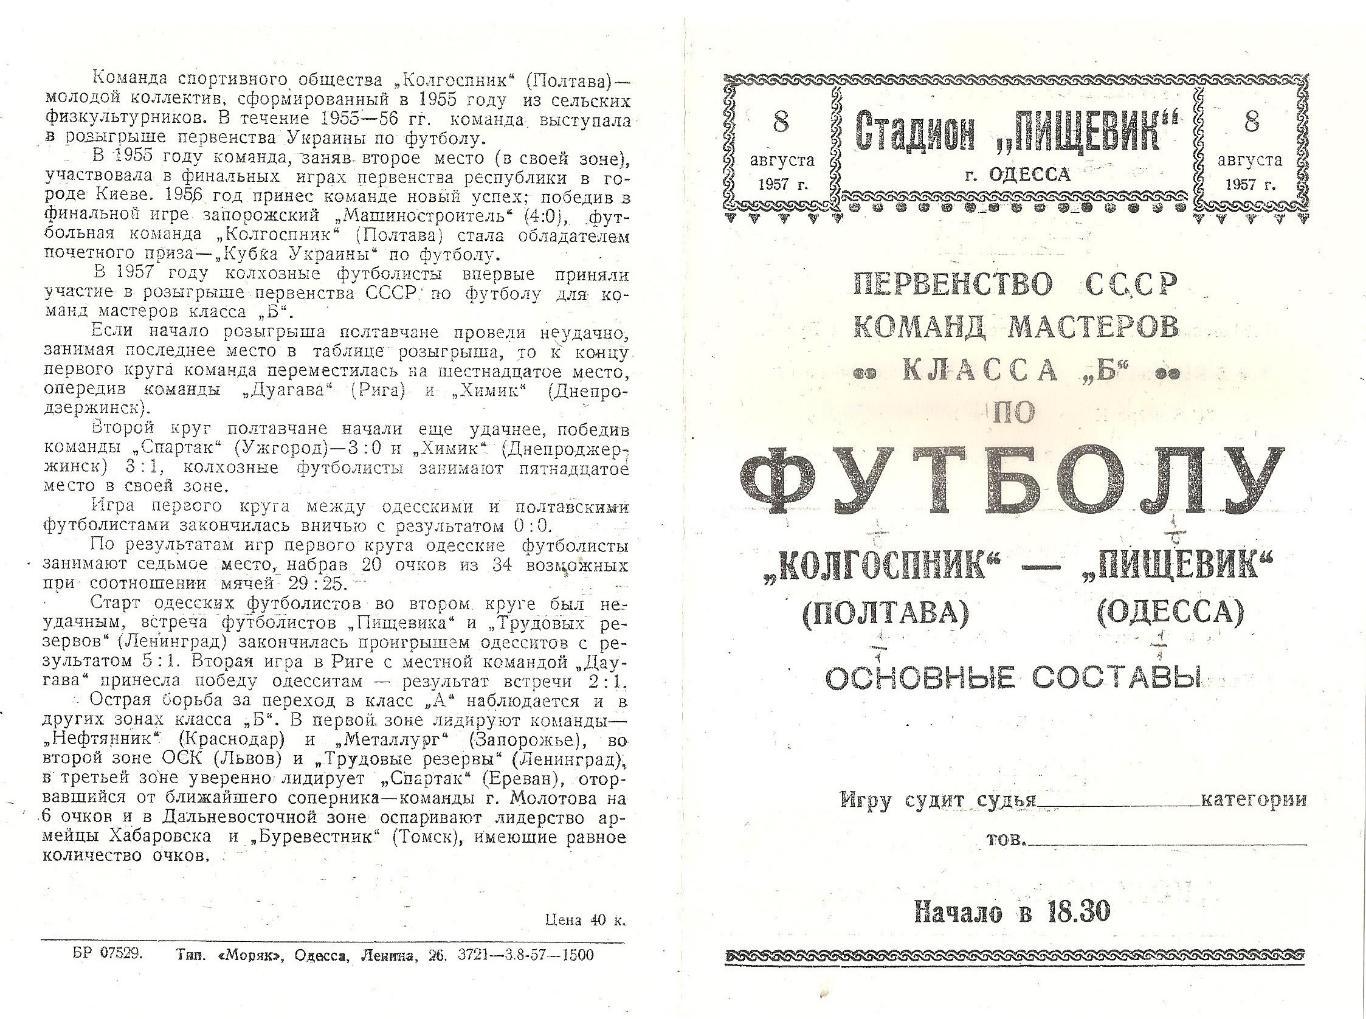 Пищевик Одесса - Колгоспник Полтава 8.08.1957г. (копия)